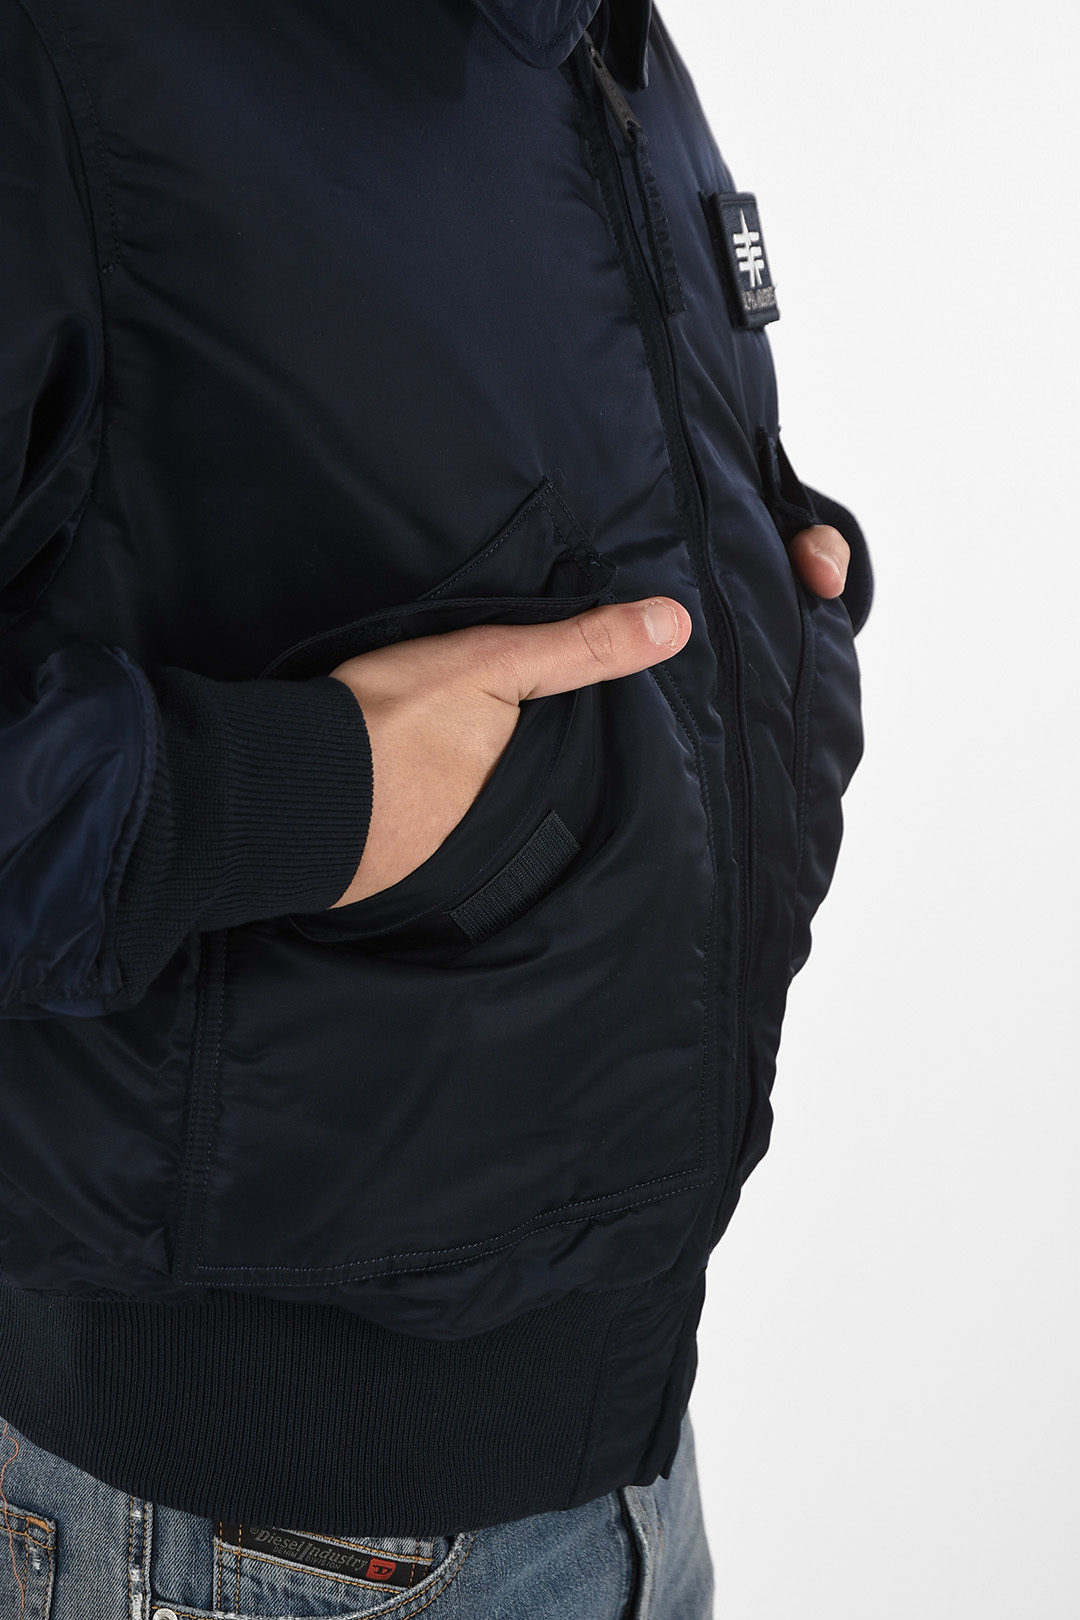 ジャケット/アウター ミリタリージャケット full zip utility fatigue jacket